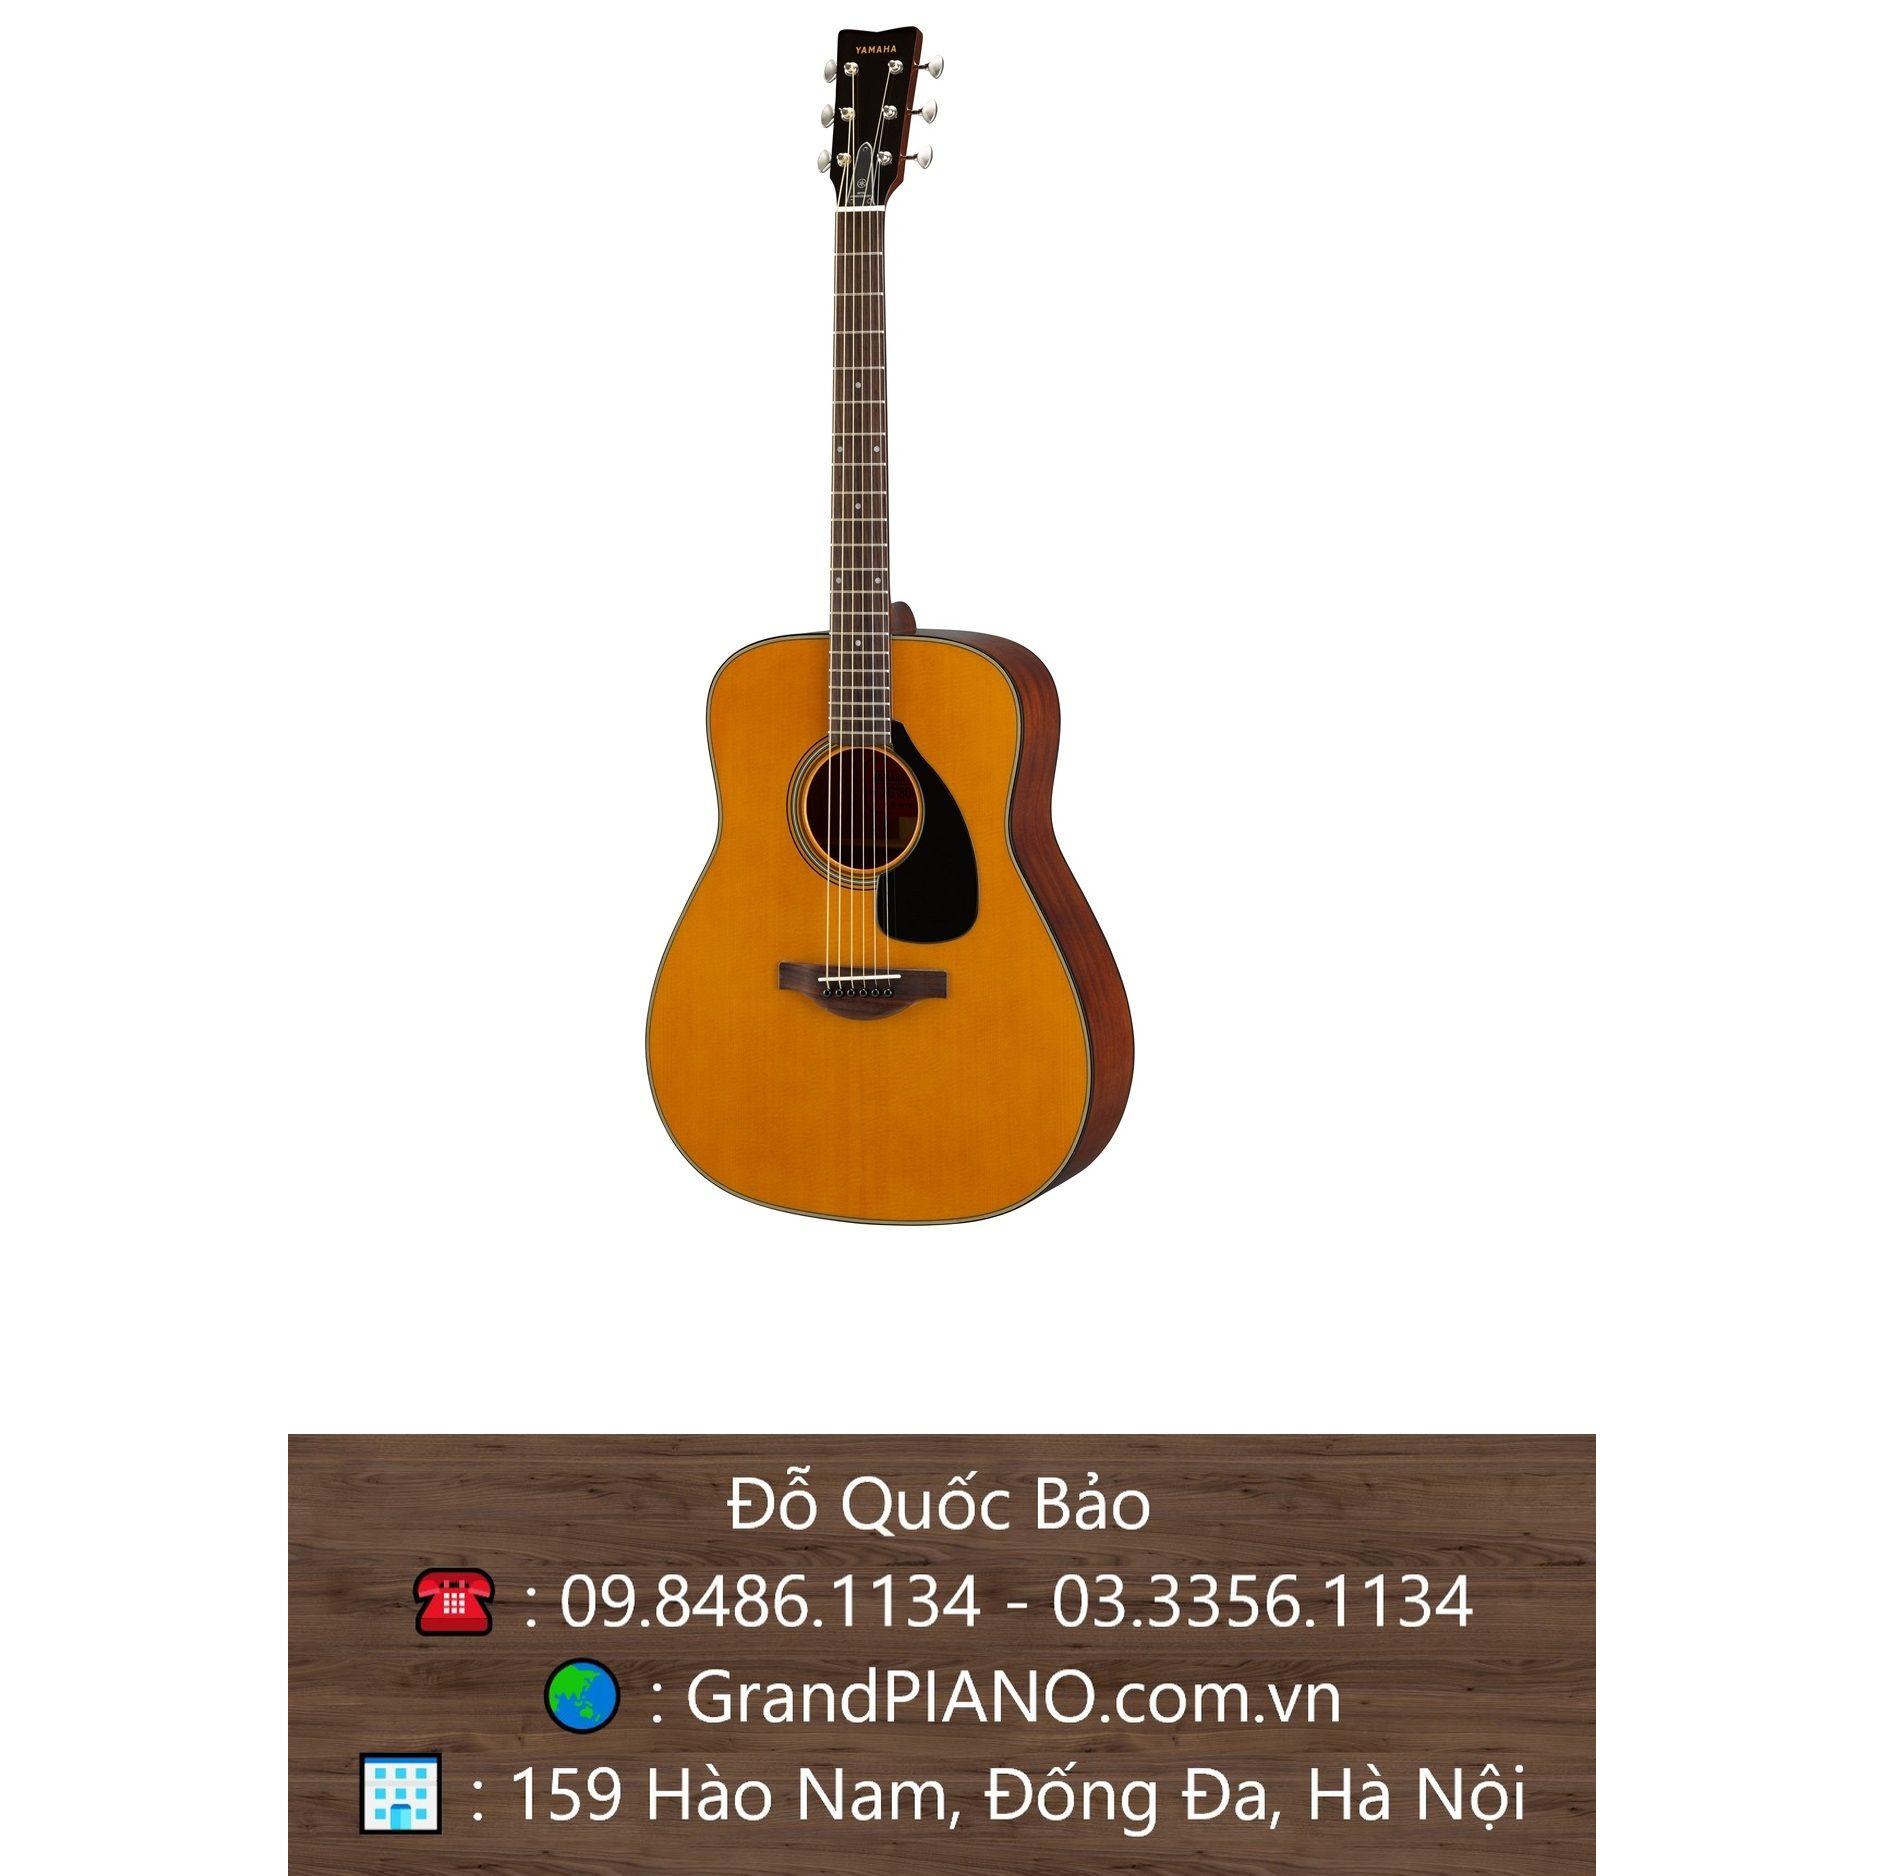 Đàn Guitar Yamaha Acoustic FG180-50TH 